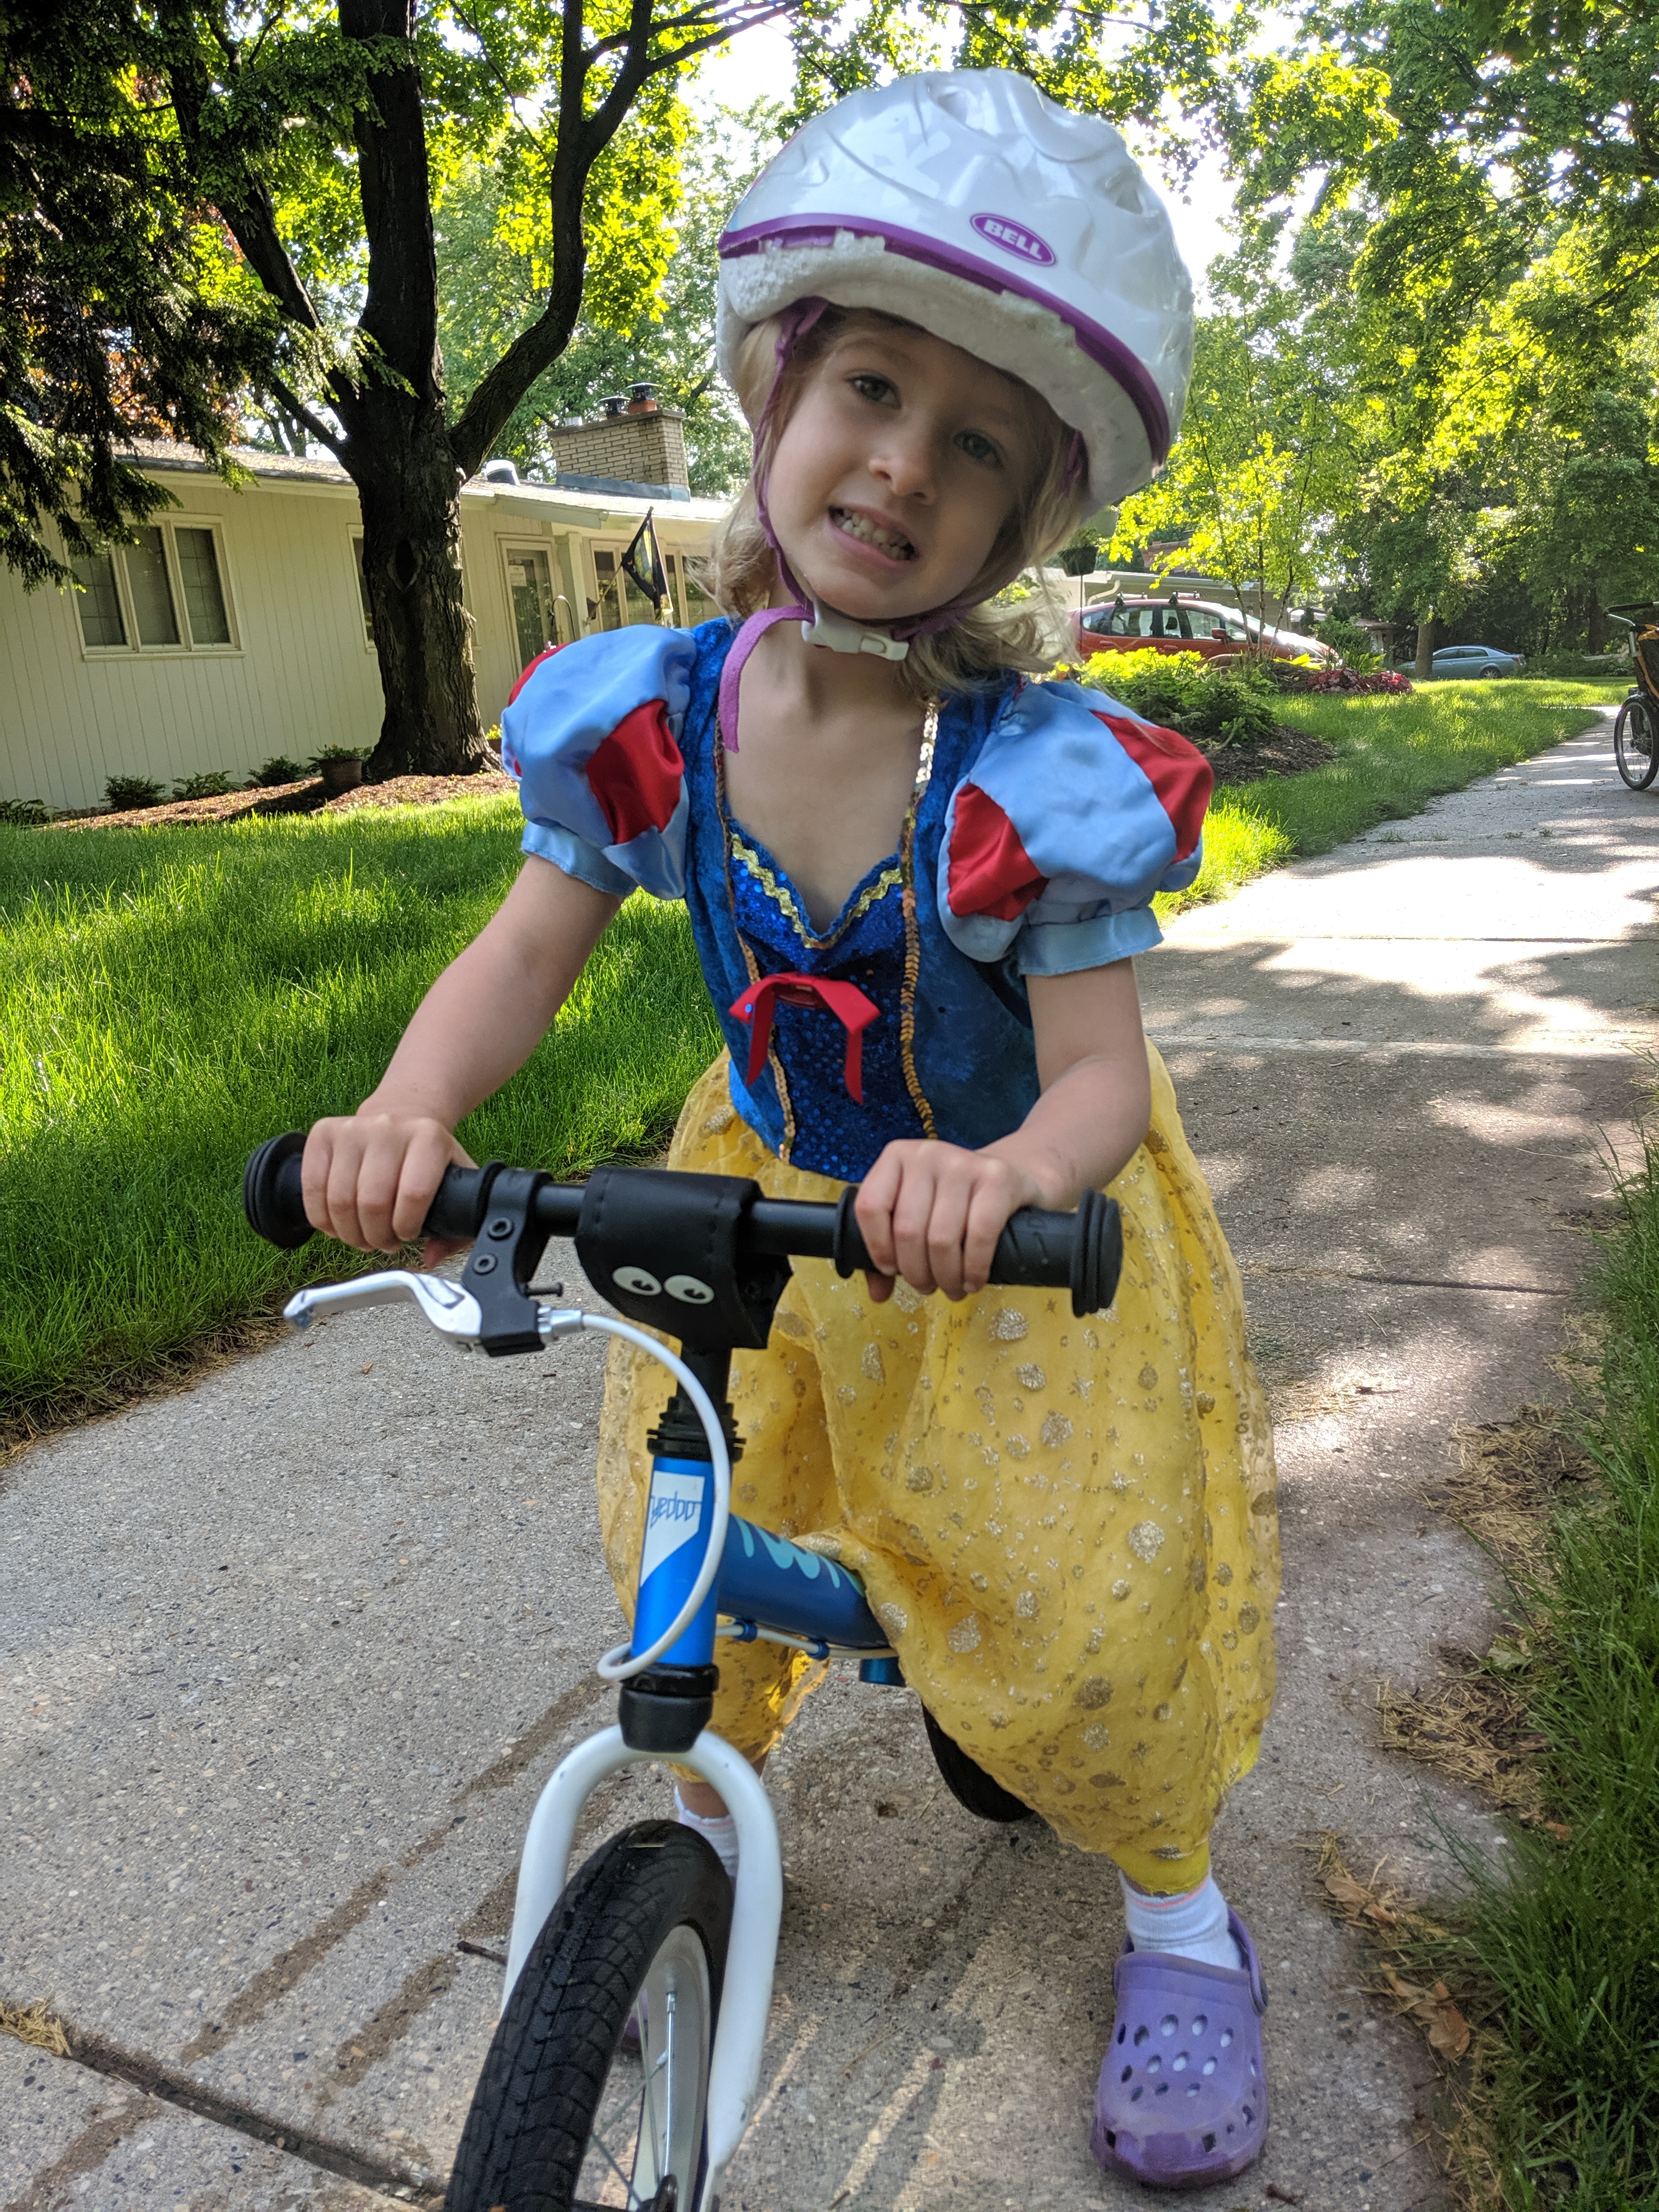 Snow White bikes to work.